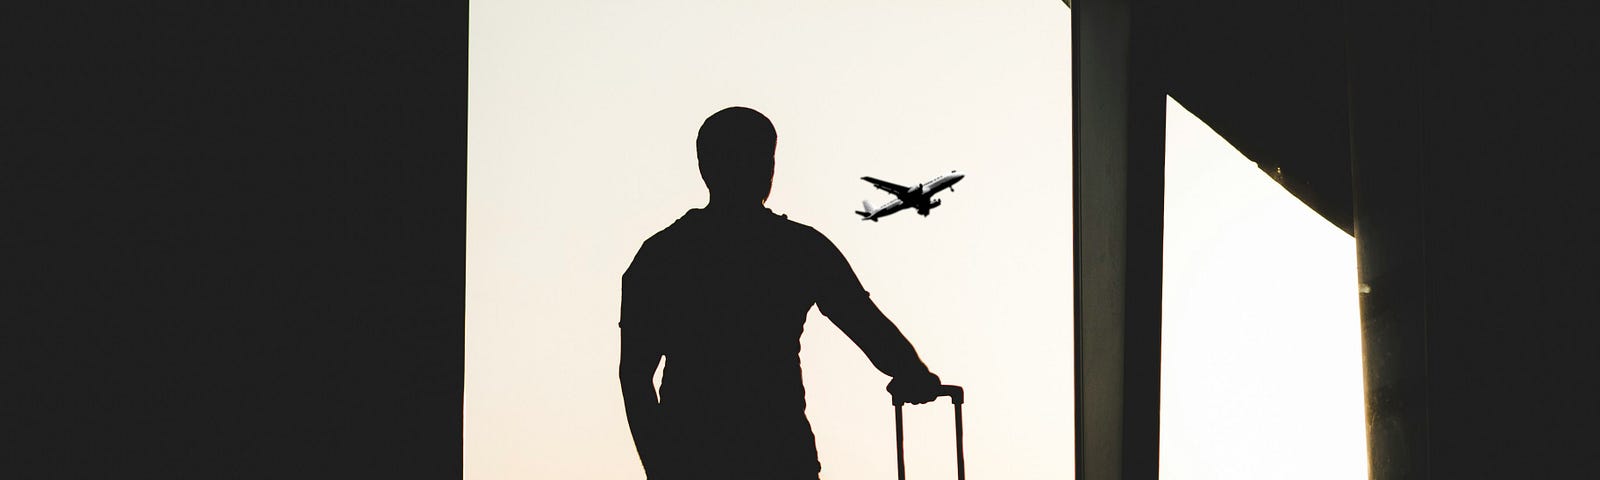 man waiting at the airport- shadows